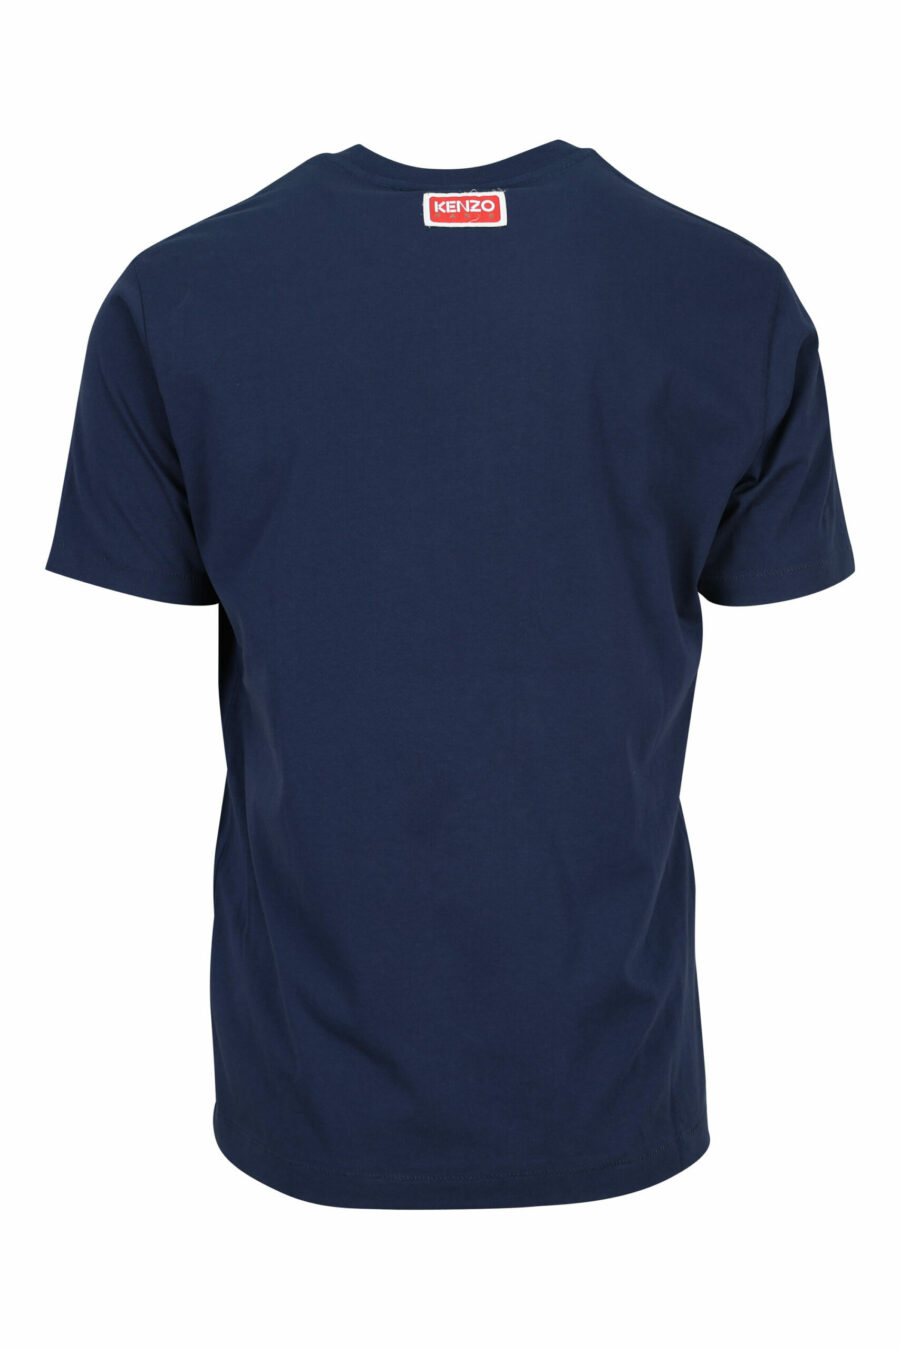 Blaues T-Shirt mit "Blumen"-Logo - 3612230465732 1 skaliert